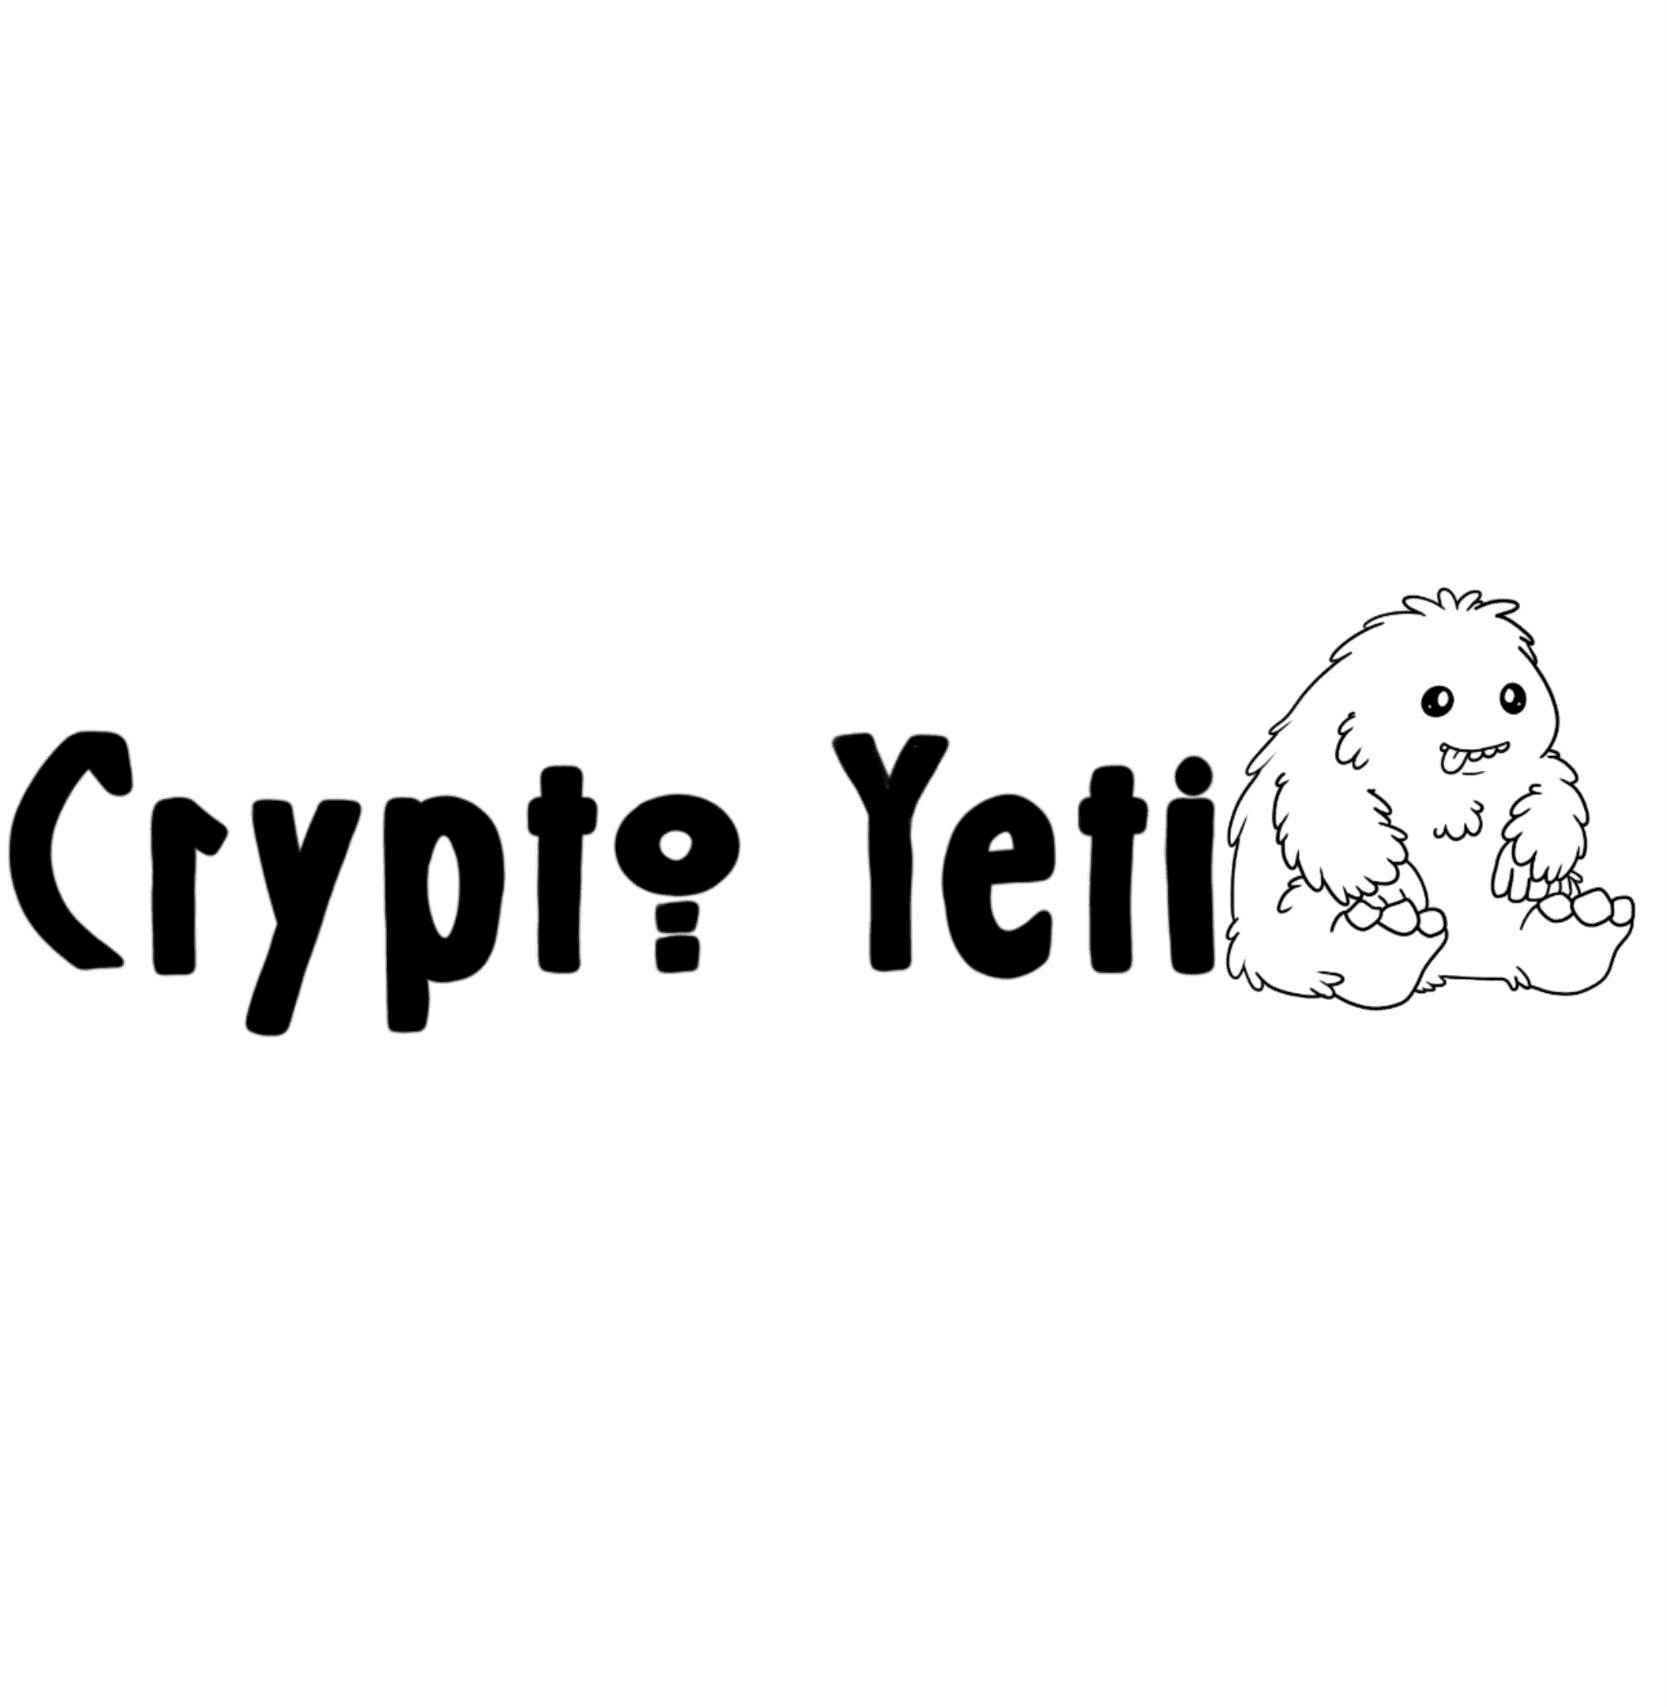 Crypto_Yeti1 バナー